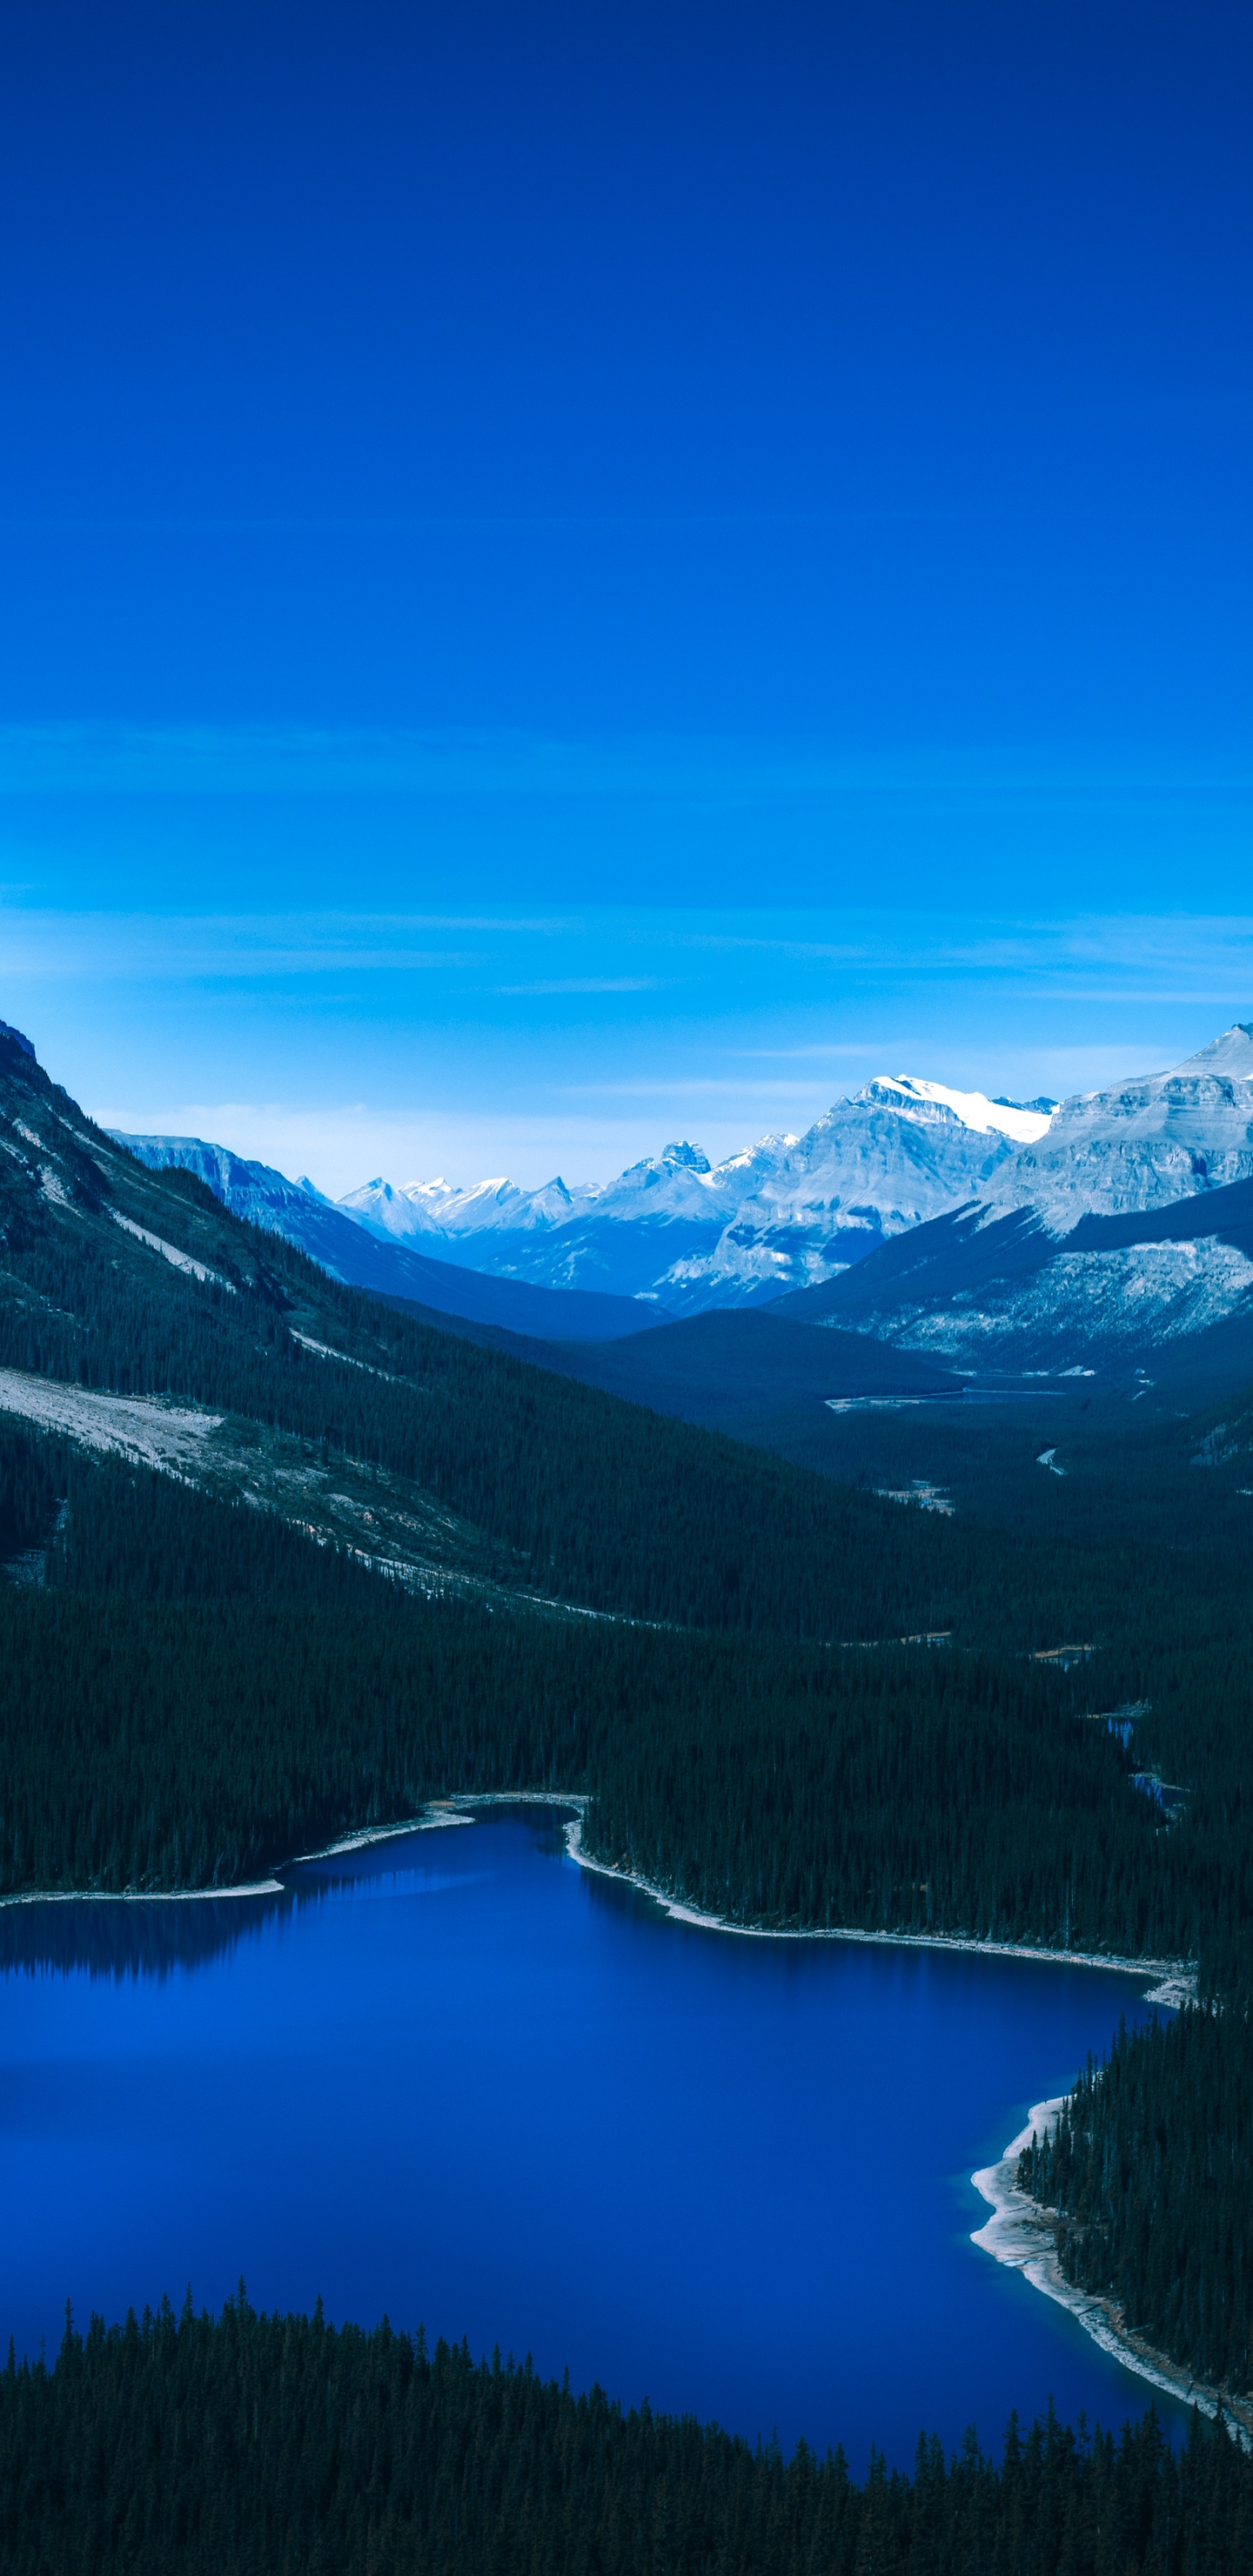 2960×1440手机壁纸-雪山和深蓝的湖水